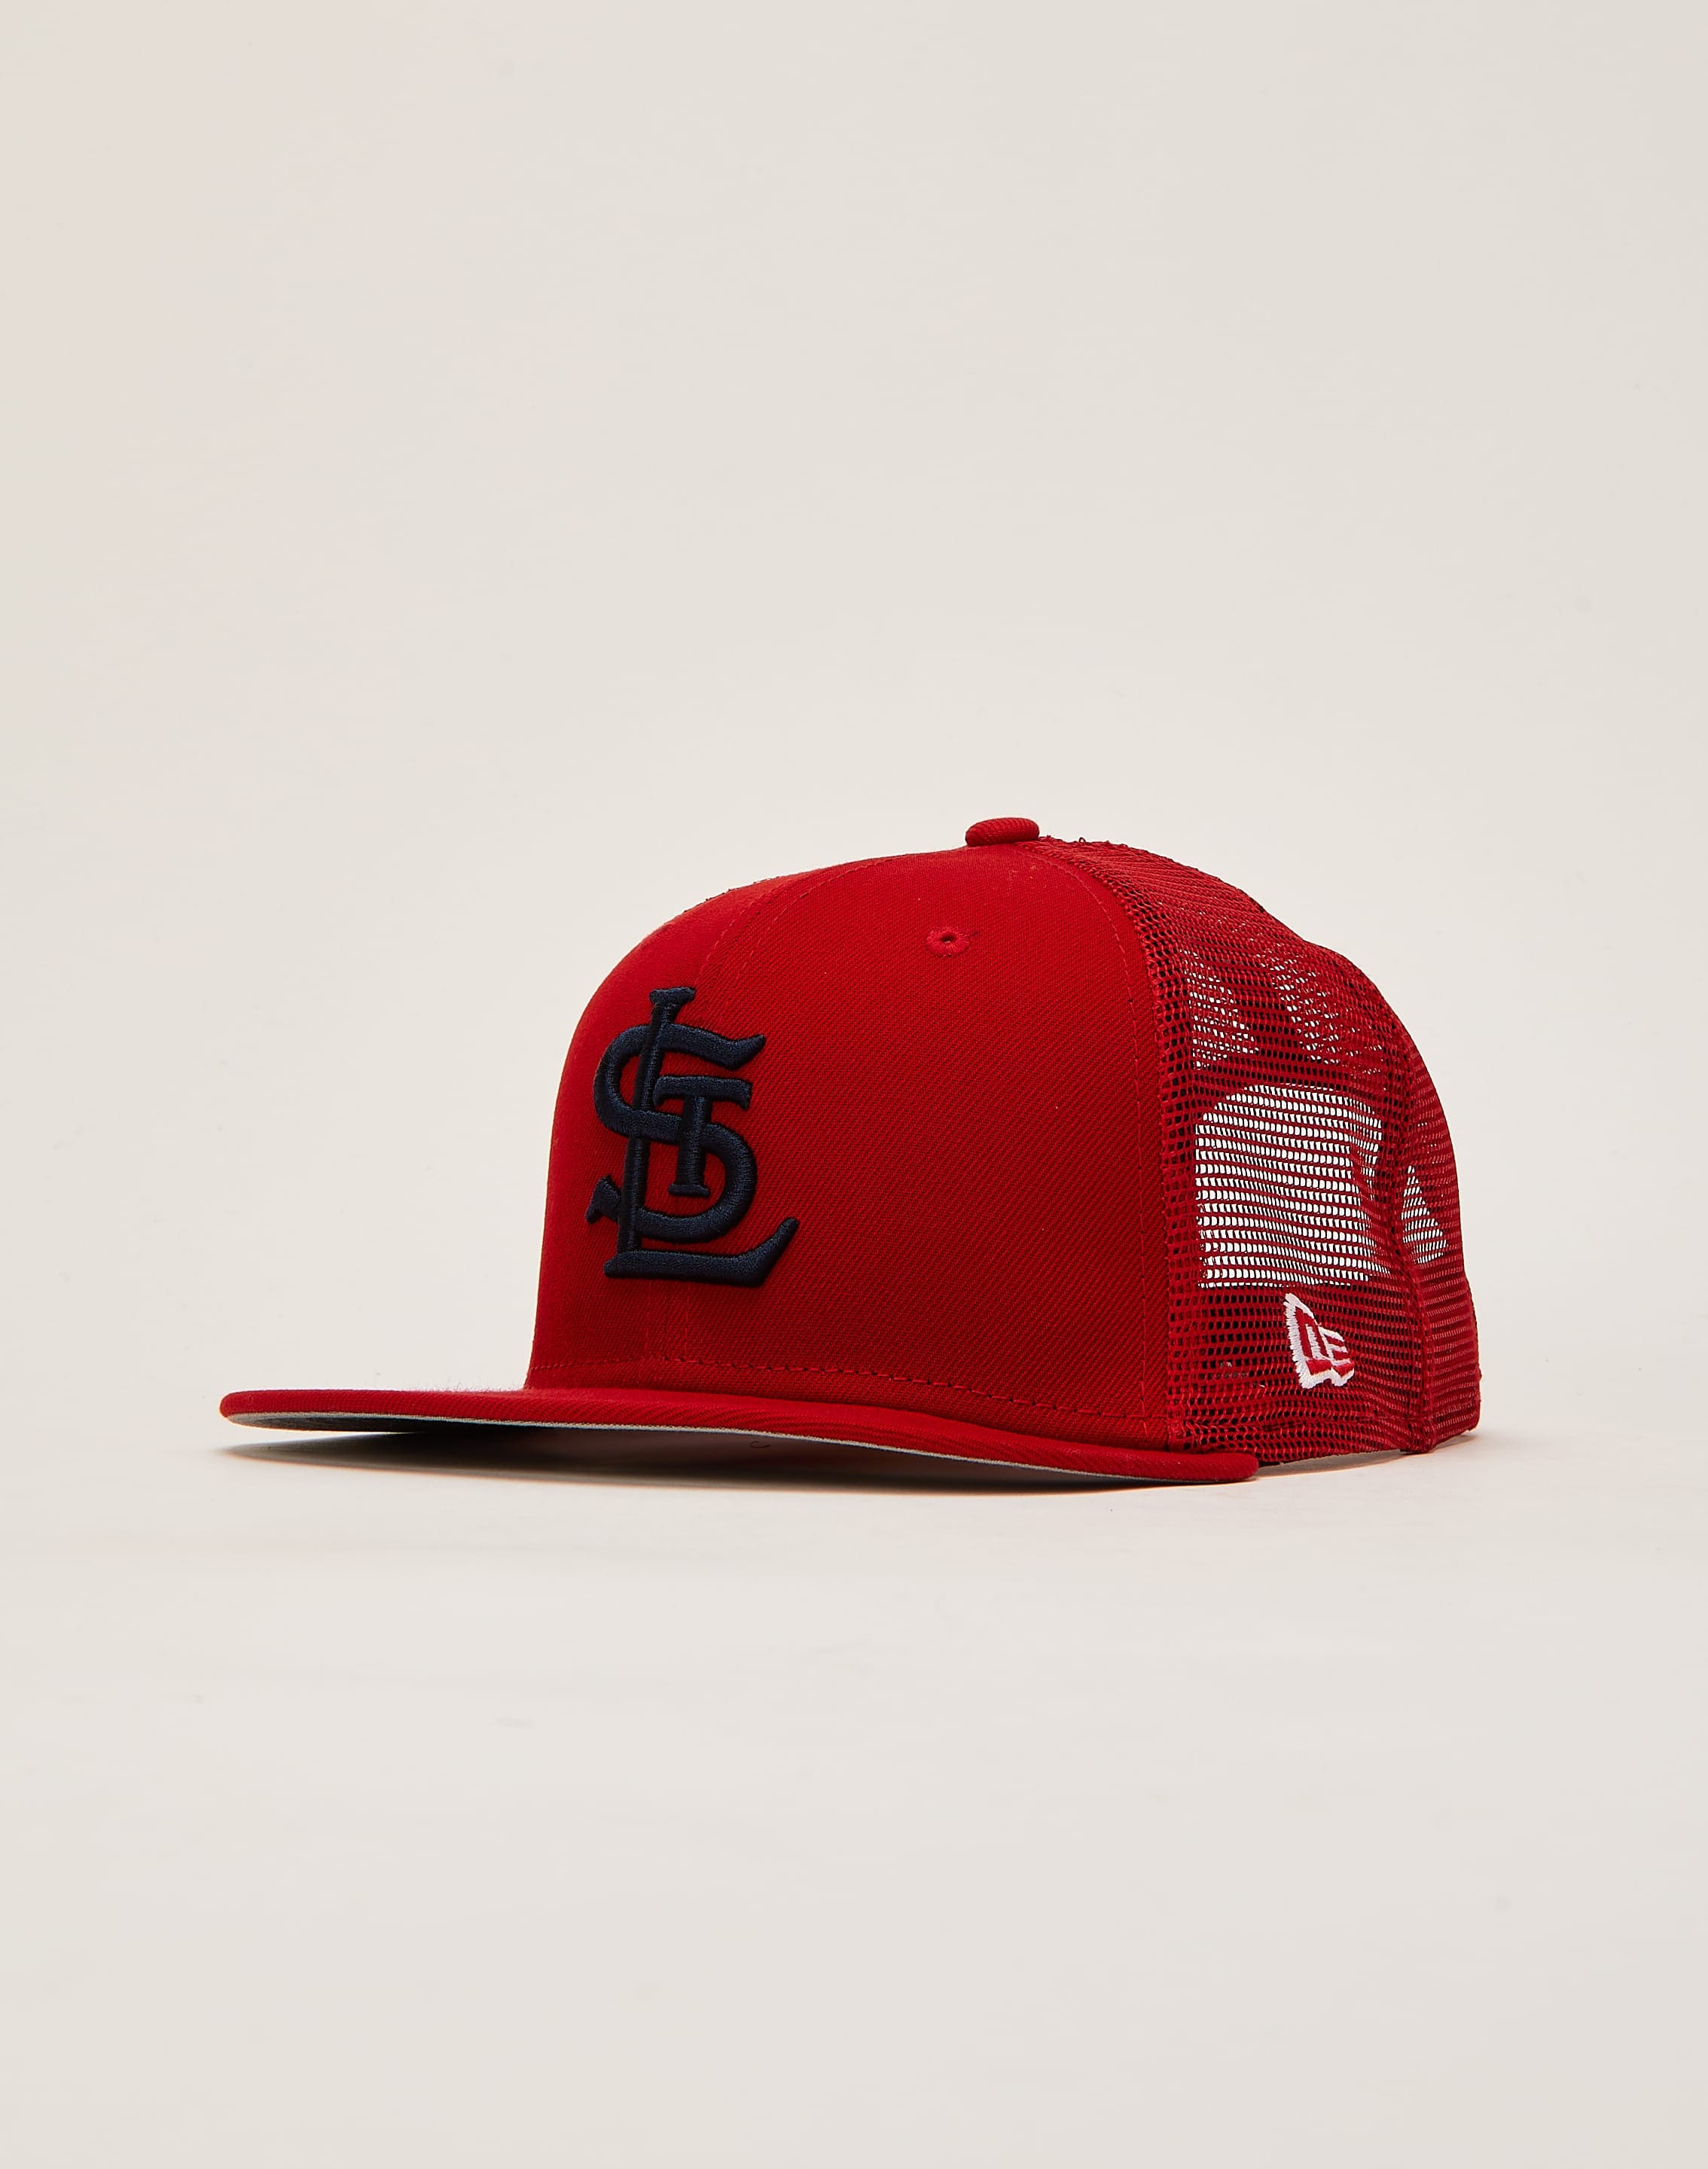 New Era Men New Era St. Louis Cardinals 9FIFTY Trucker Hat Red 1 Size